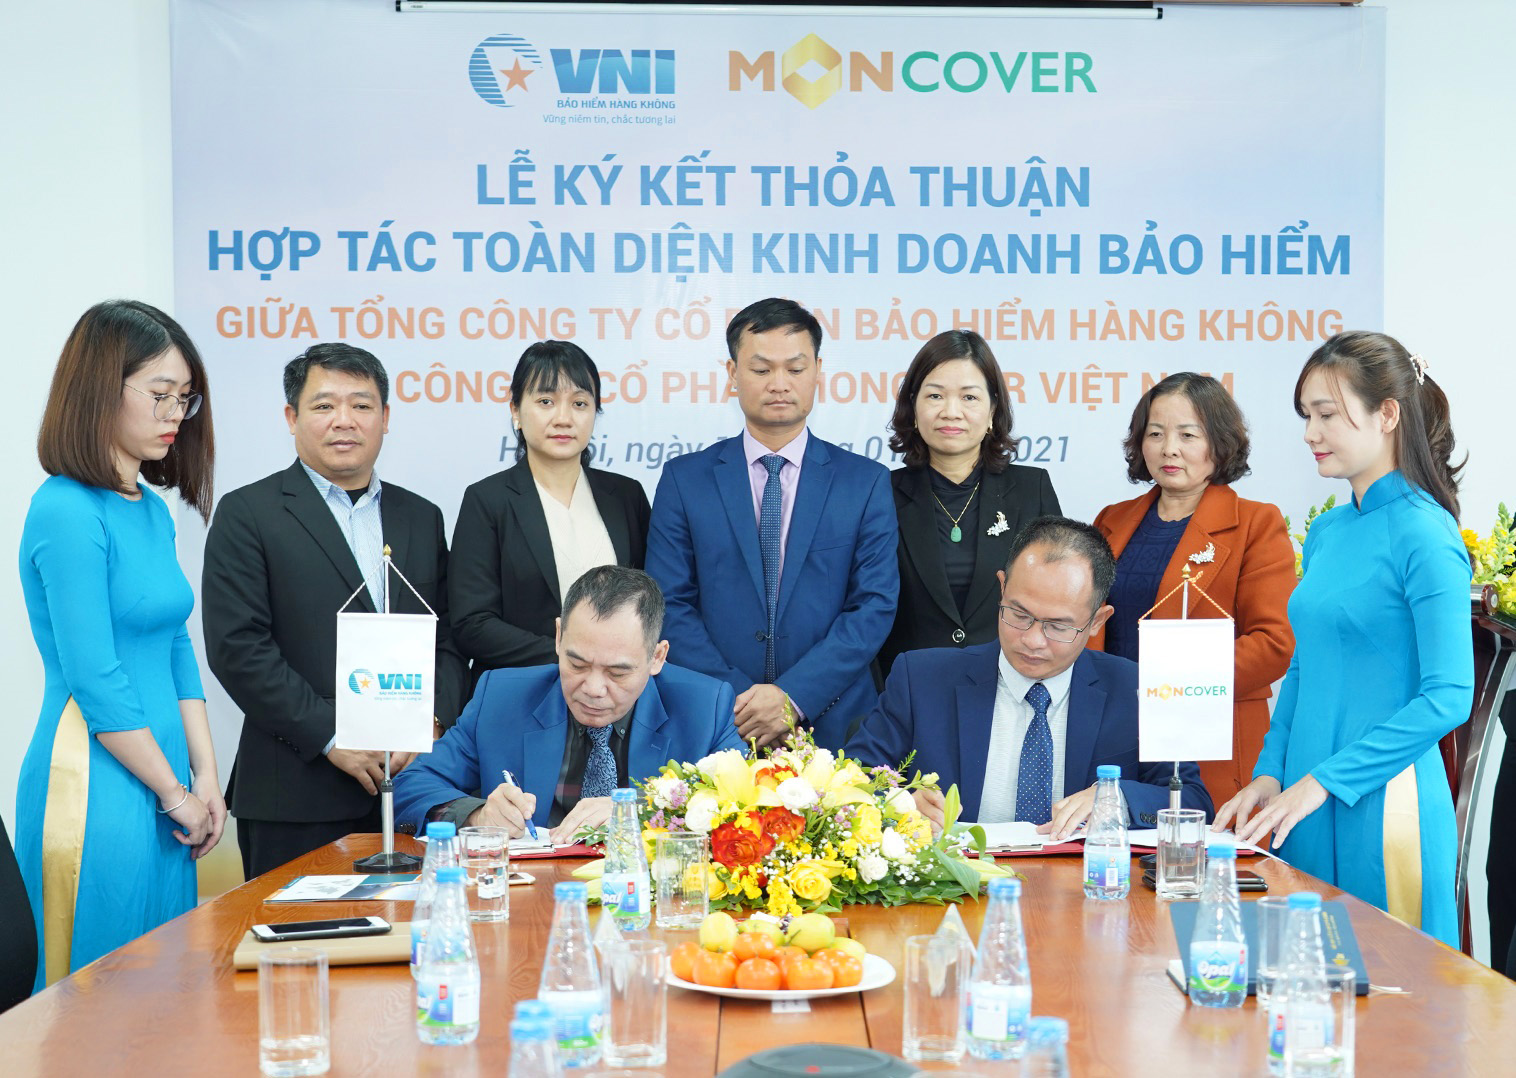 Tổng Công ty Cổ phần Bảo hiểm Hàng không (VNI) và Công ty Cổ phần MONCOVER Việt Nam (MONCOVER) đã ký kết thỏa thuận hợp tác toàn diện kinh doanh bảo hiểm.